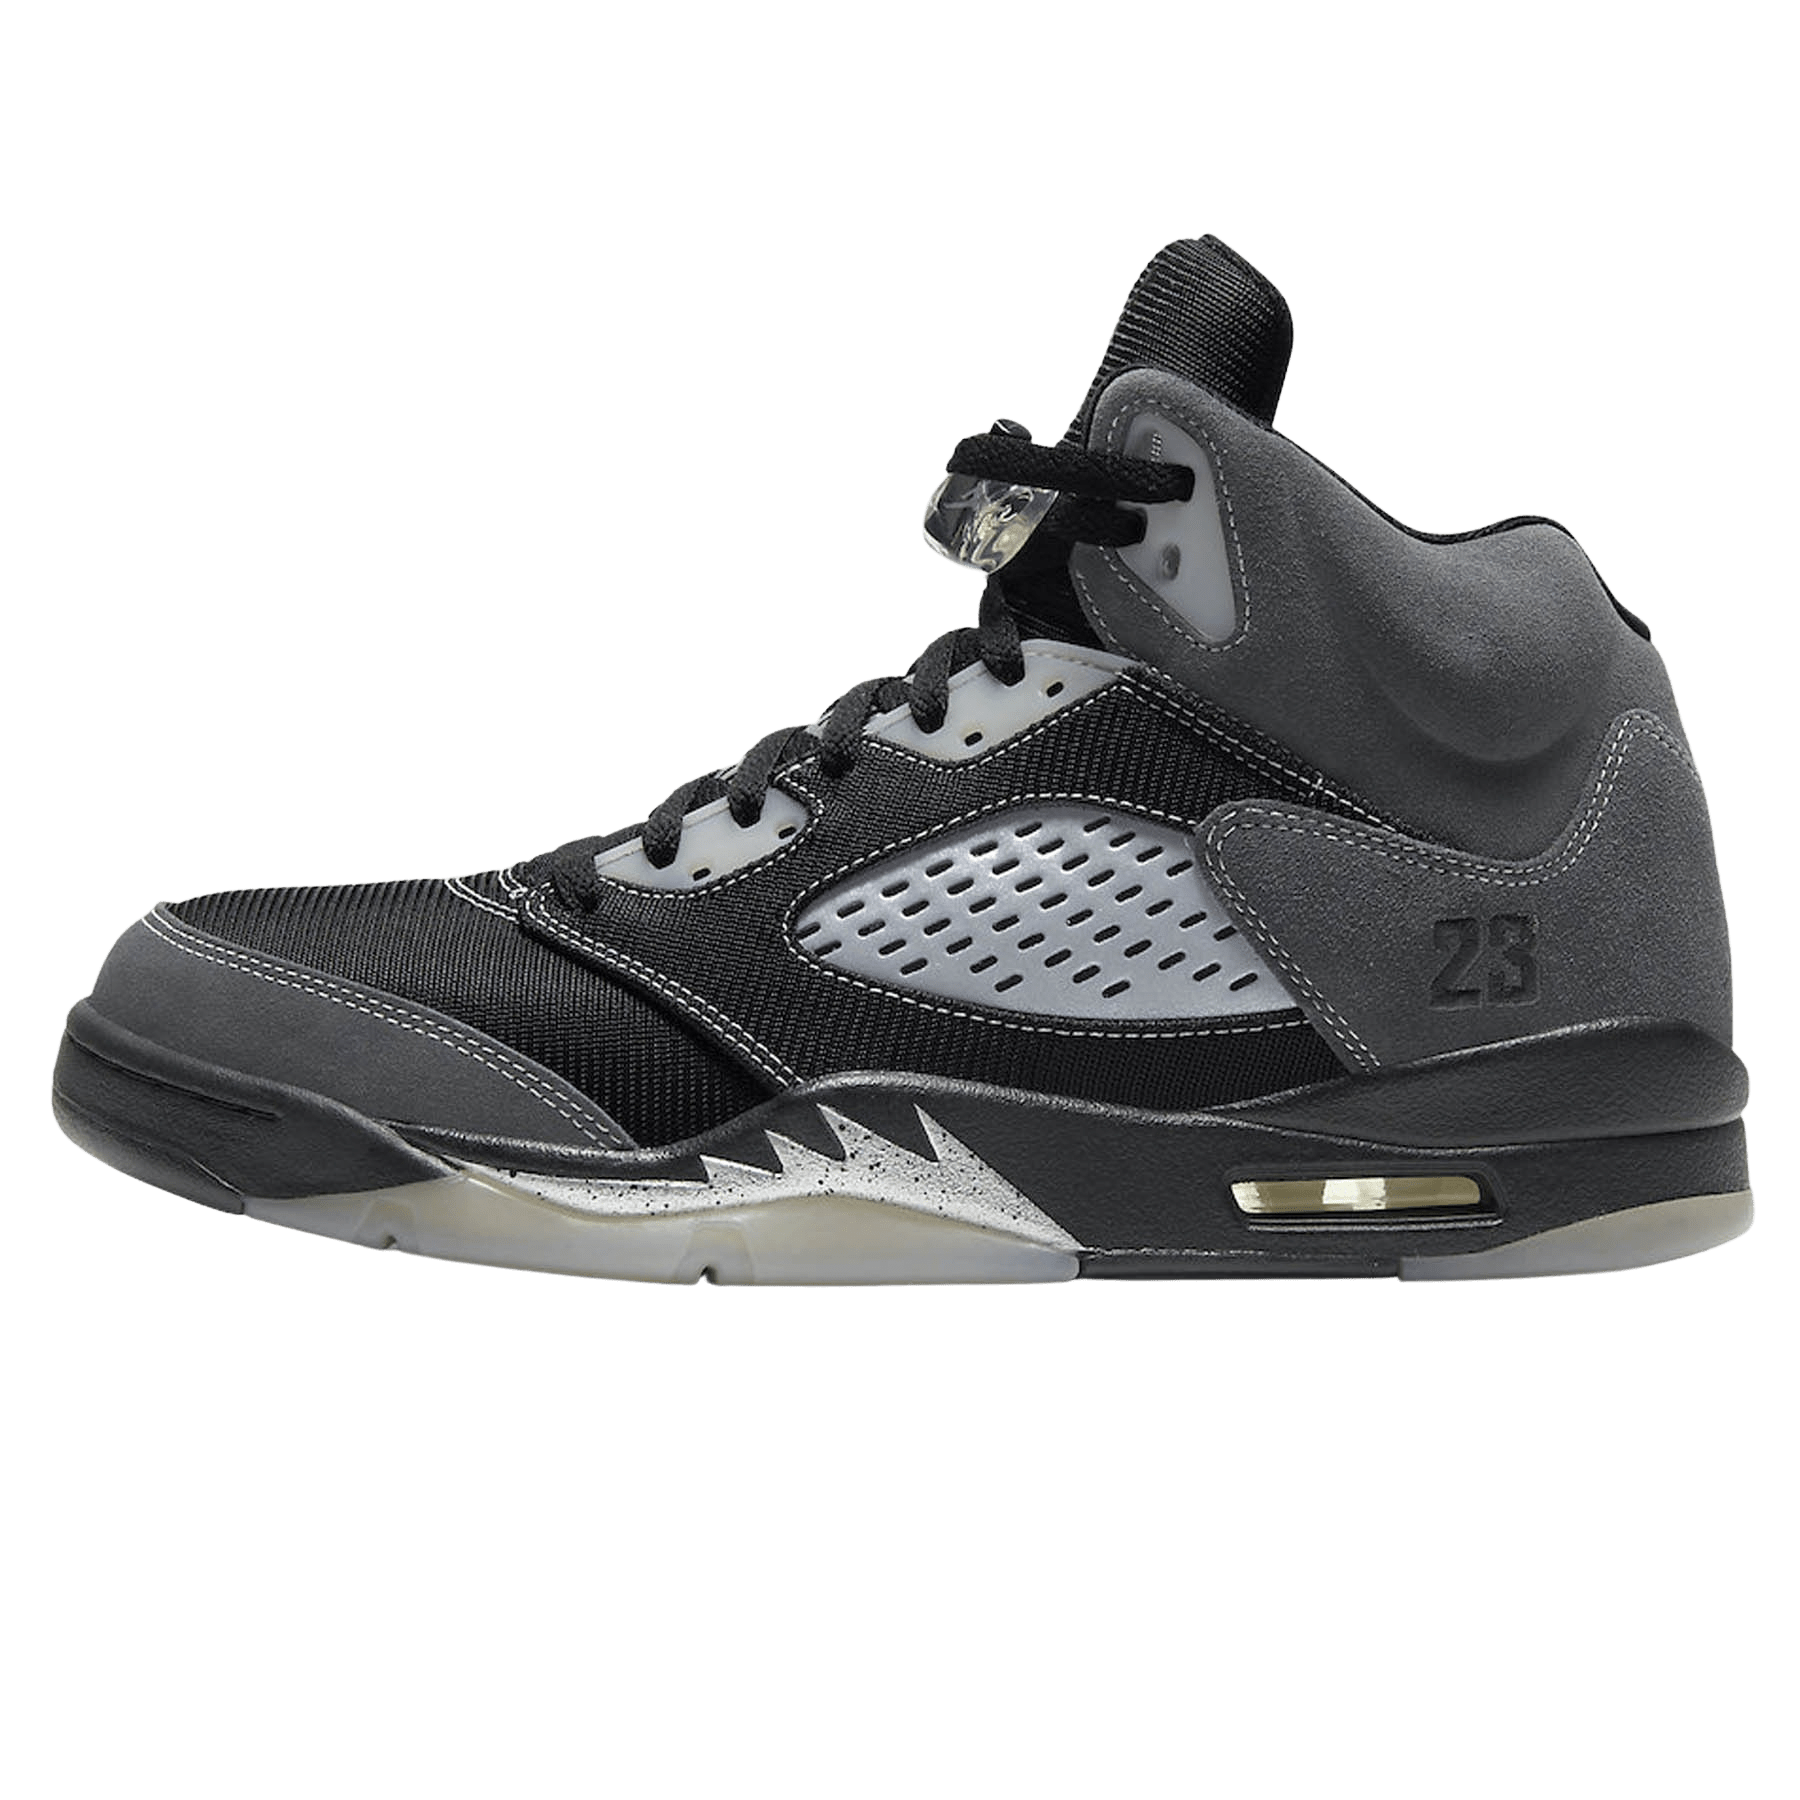 Air Jordan 5 Retro 'Anthracite' — Kick Game